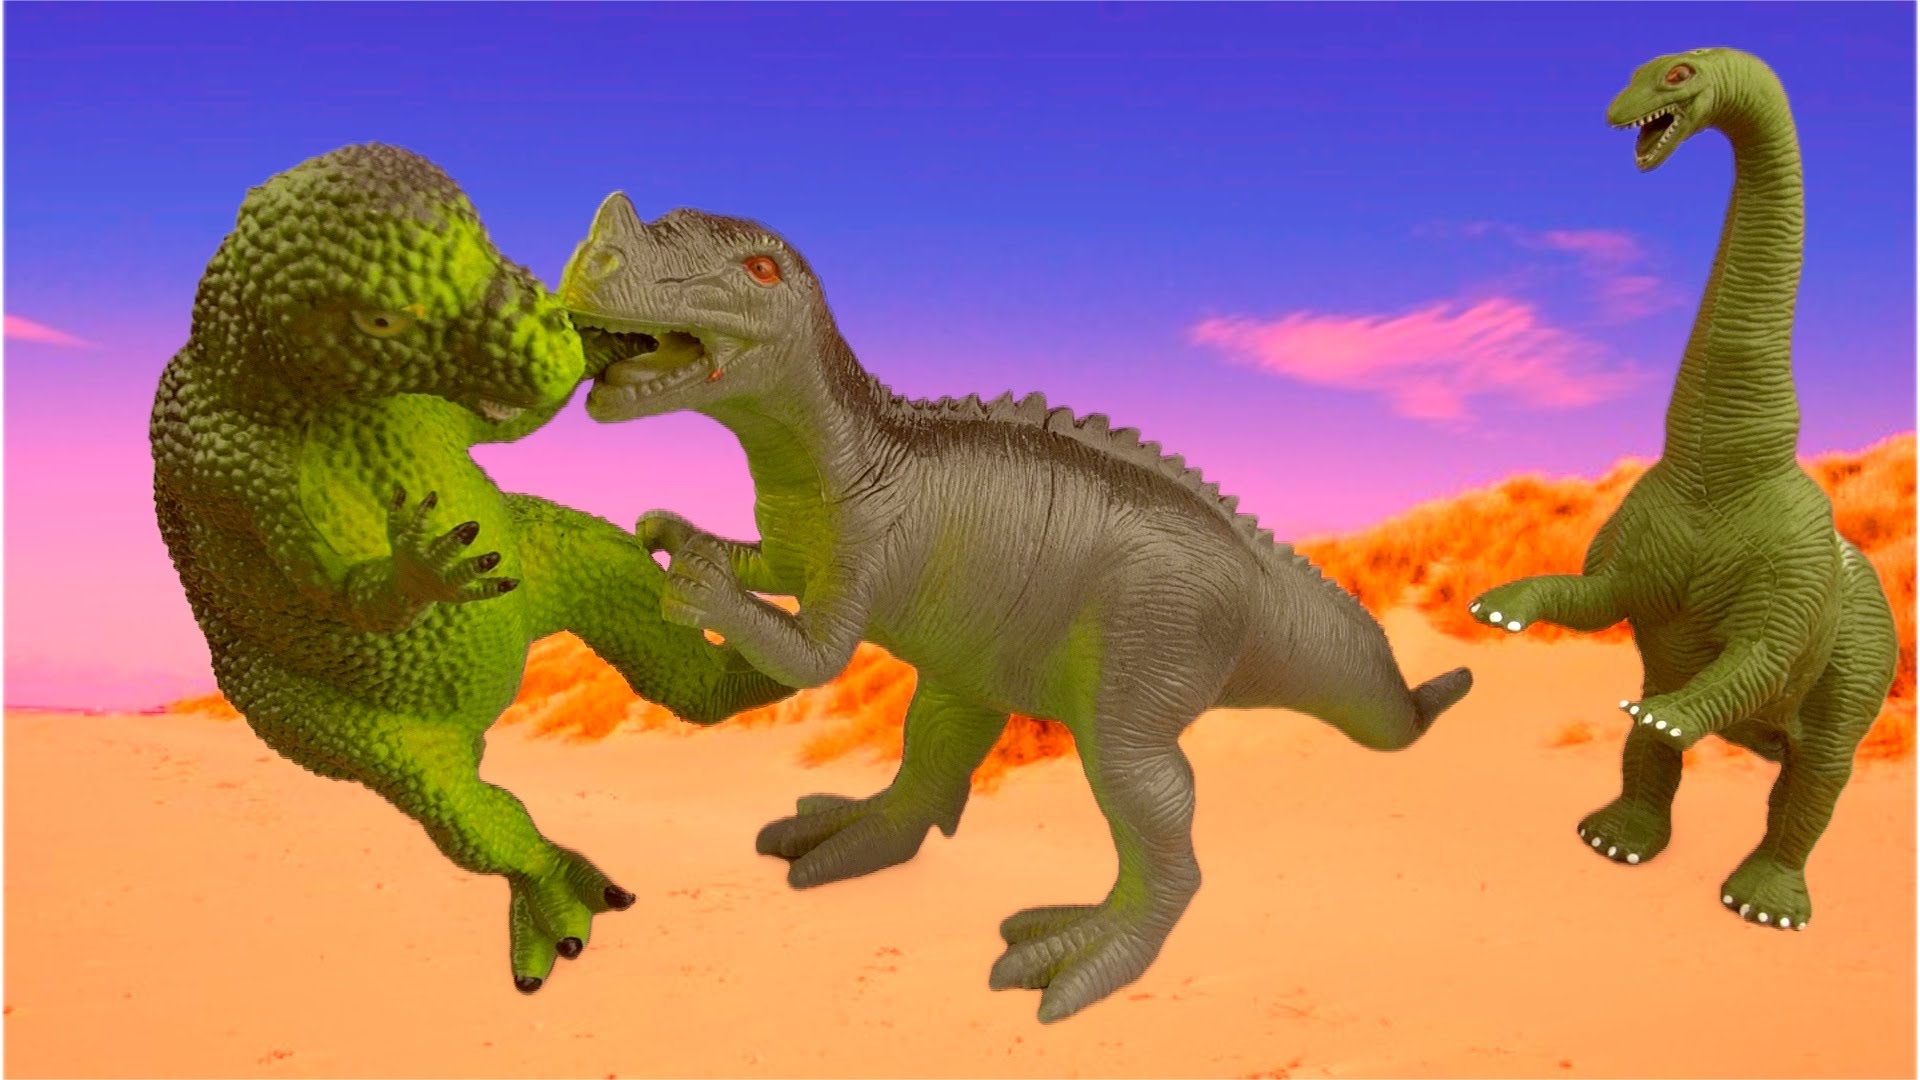 Dinosaur fight photo